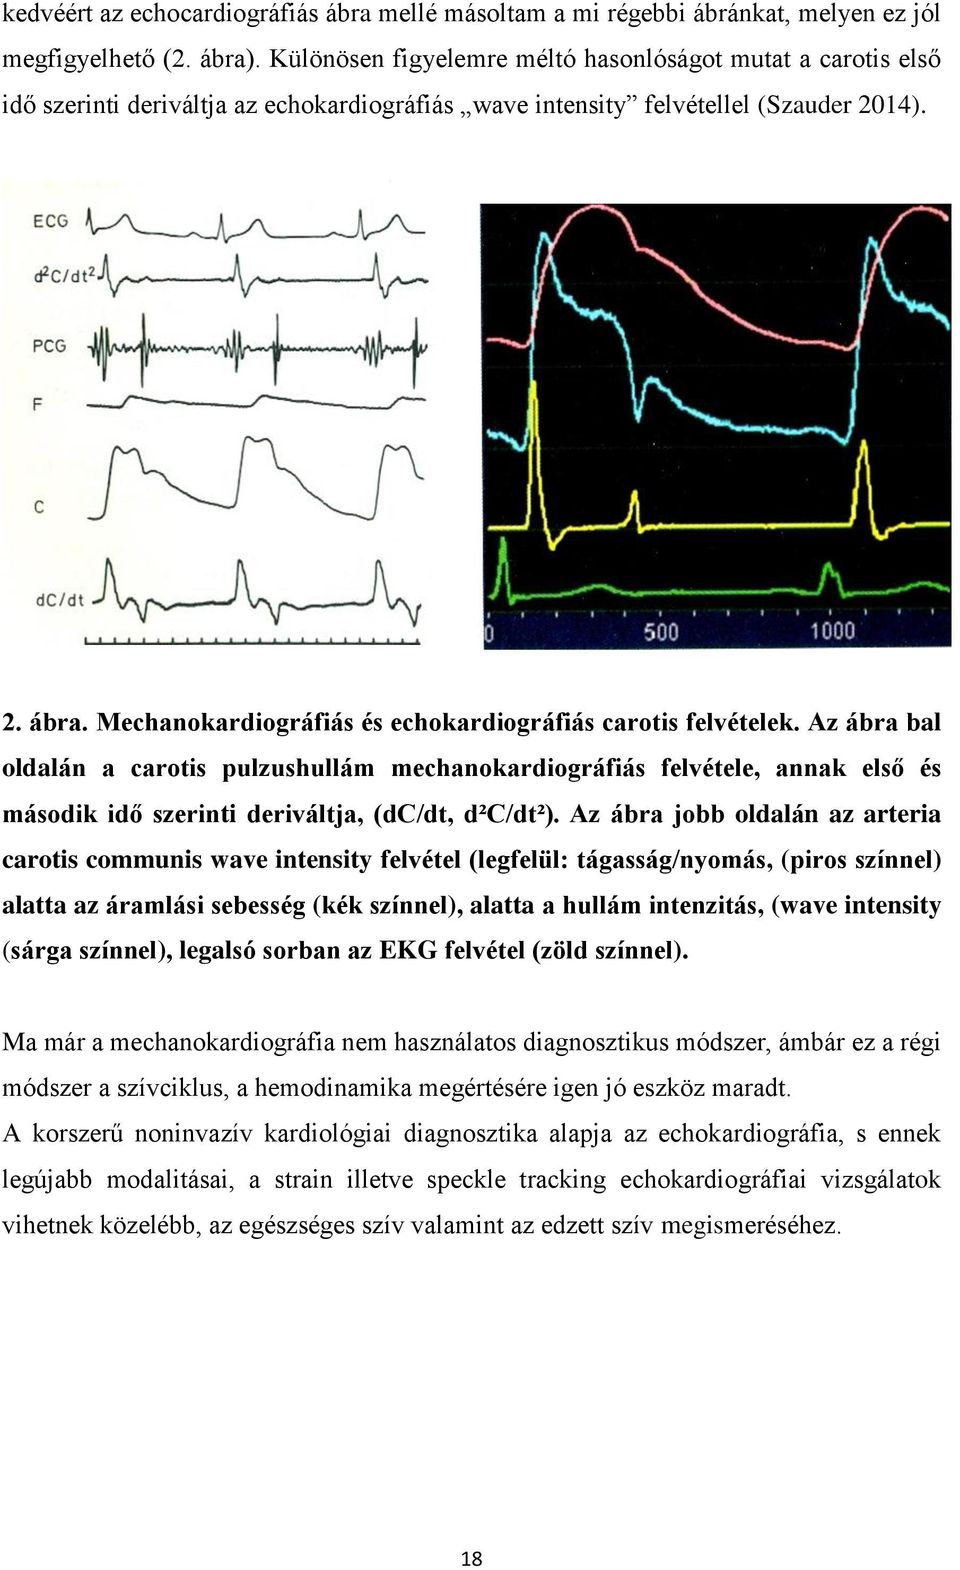 Mechanokardiográfiás és echokardiográfiás carotis felvételek.